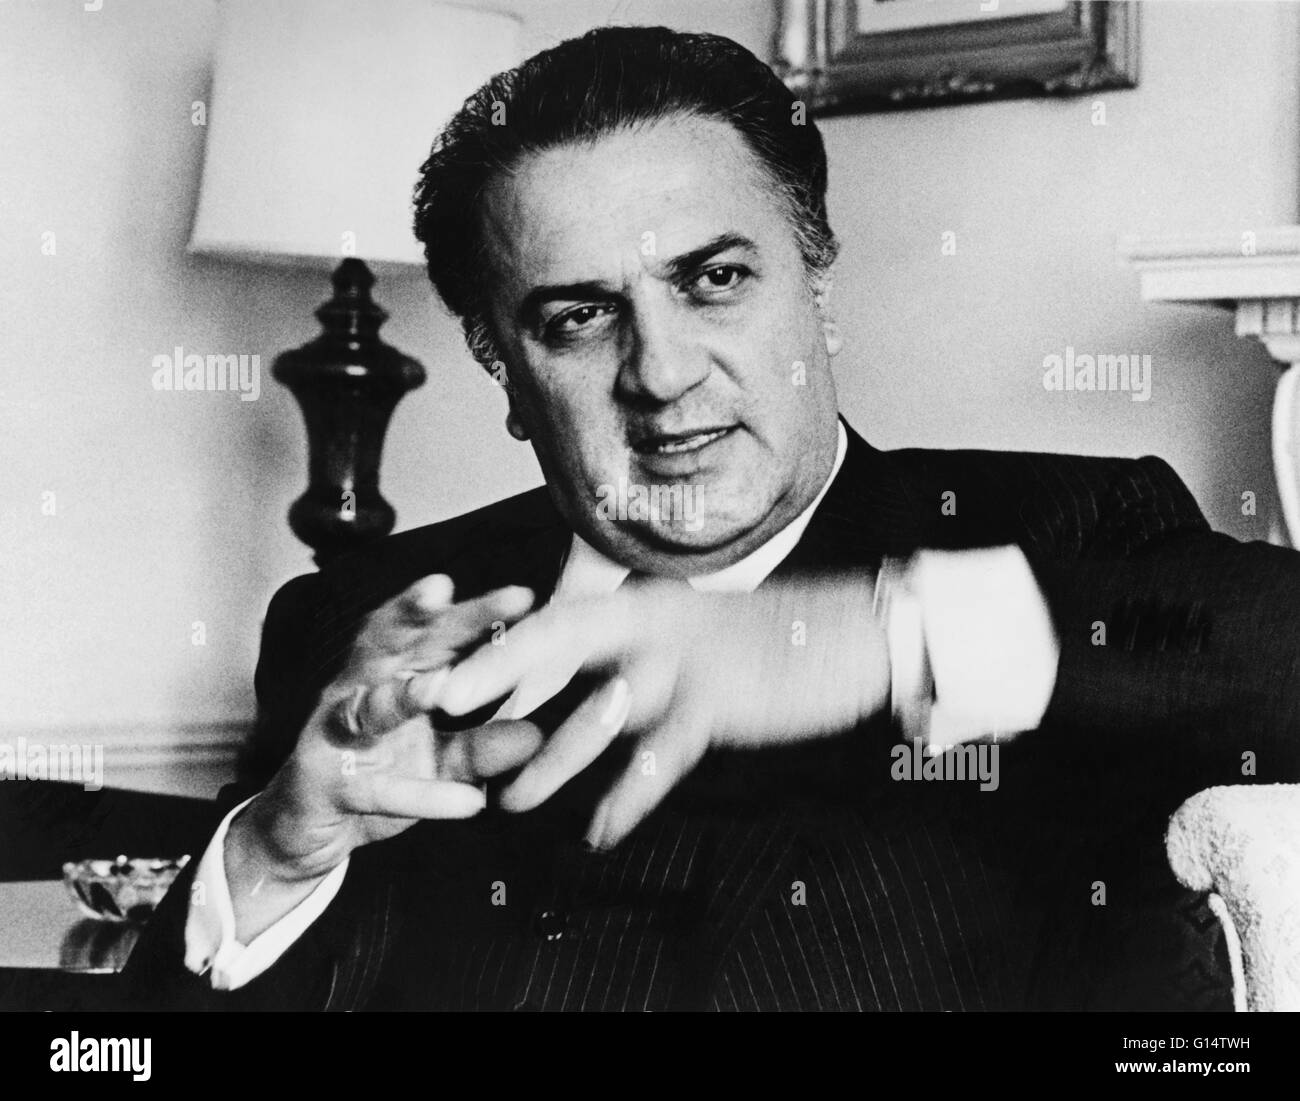 Fellini, fotografiado en 1965 por Walter Coordinador. Federico Fellini (20 de enero de 1920 - 31 de octubre de 1993) fue un director y guionista de cine italiano. Conocido por un estilo característico que mezcla fantasía y barrocas imágenes, es considerado uno de los más inf Foto de stock